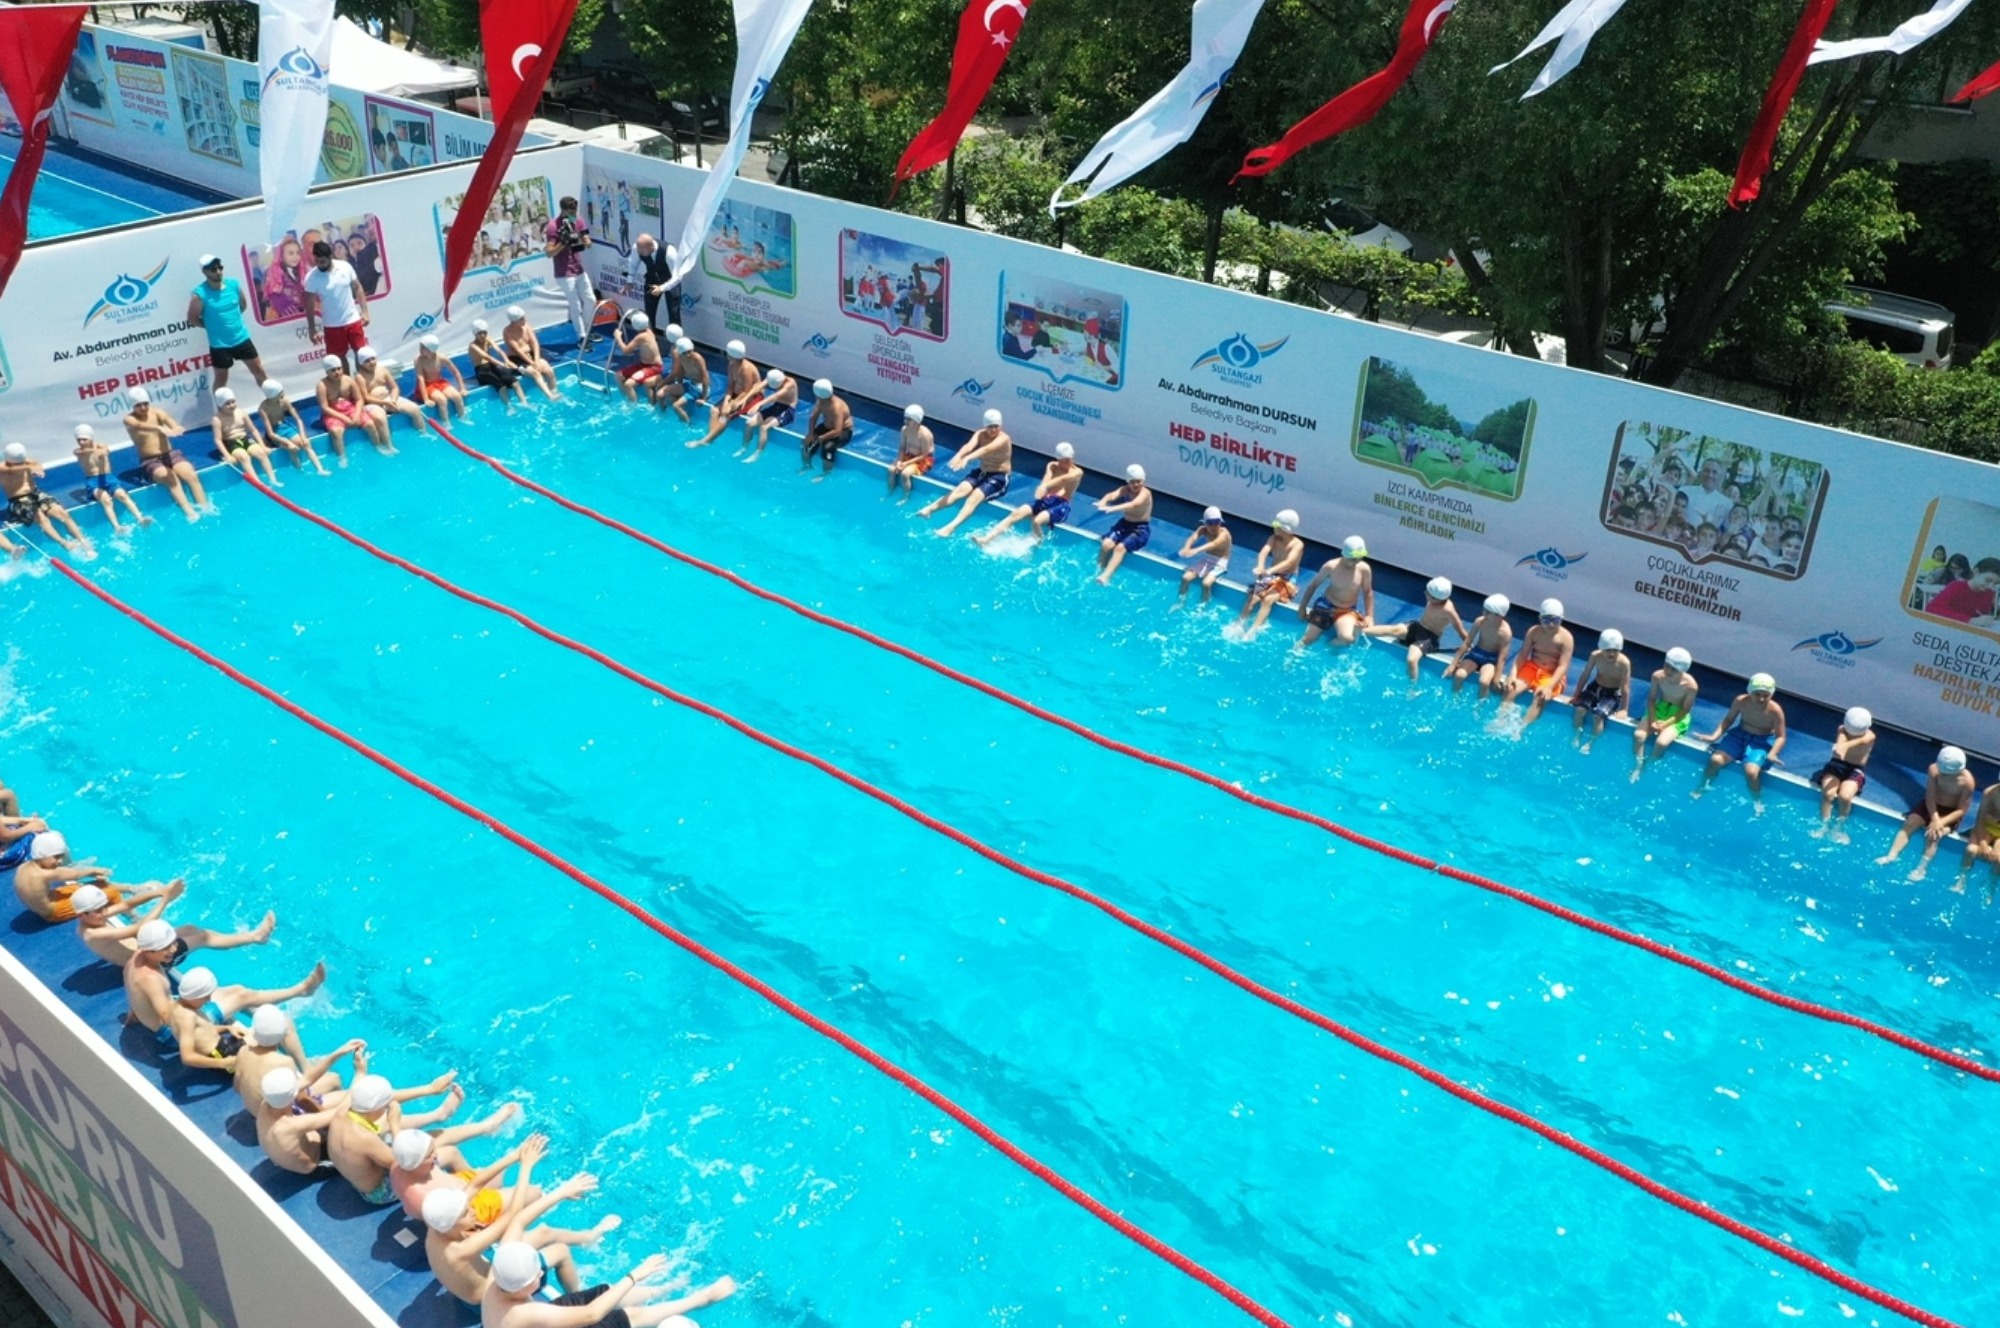 Sultangazi'de Çocuklara Yaz Hediyesi: Yüzme Havuzları Açıldı!